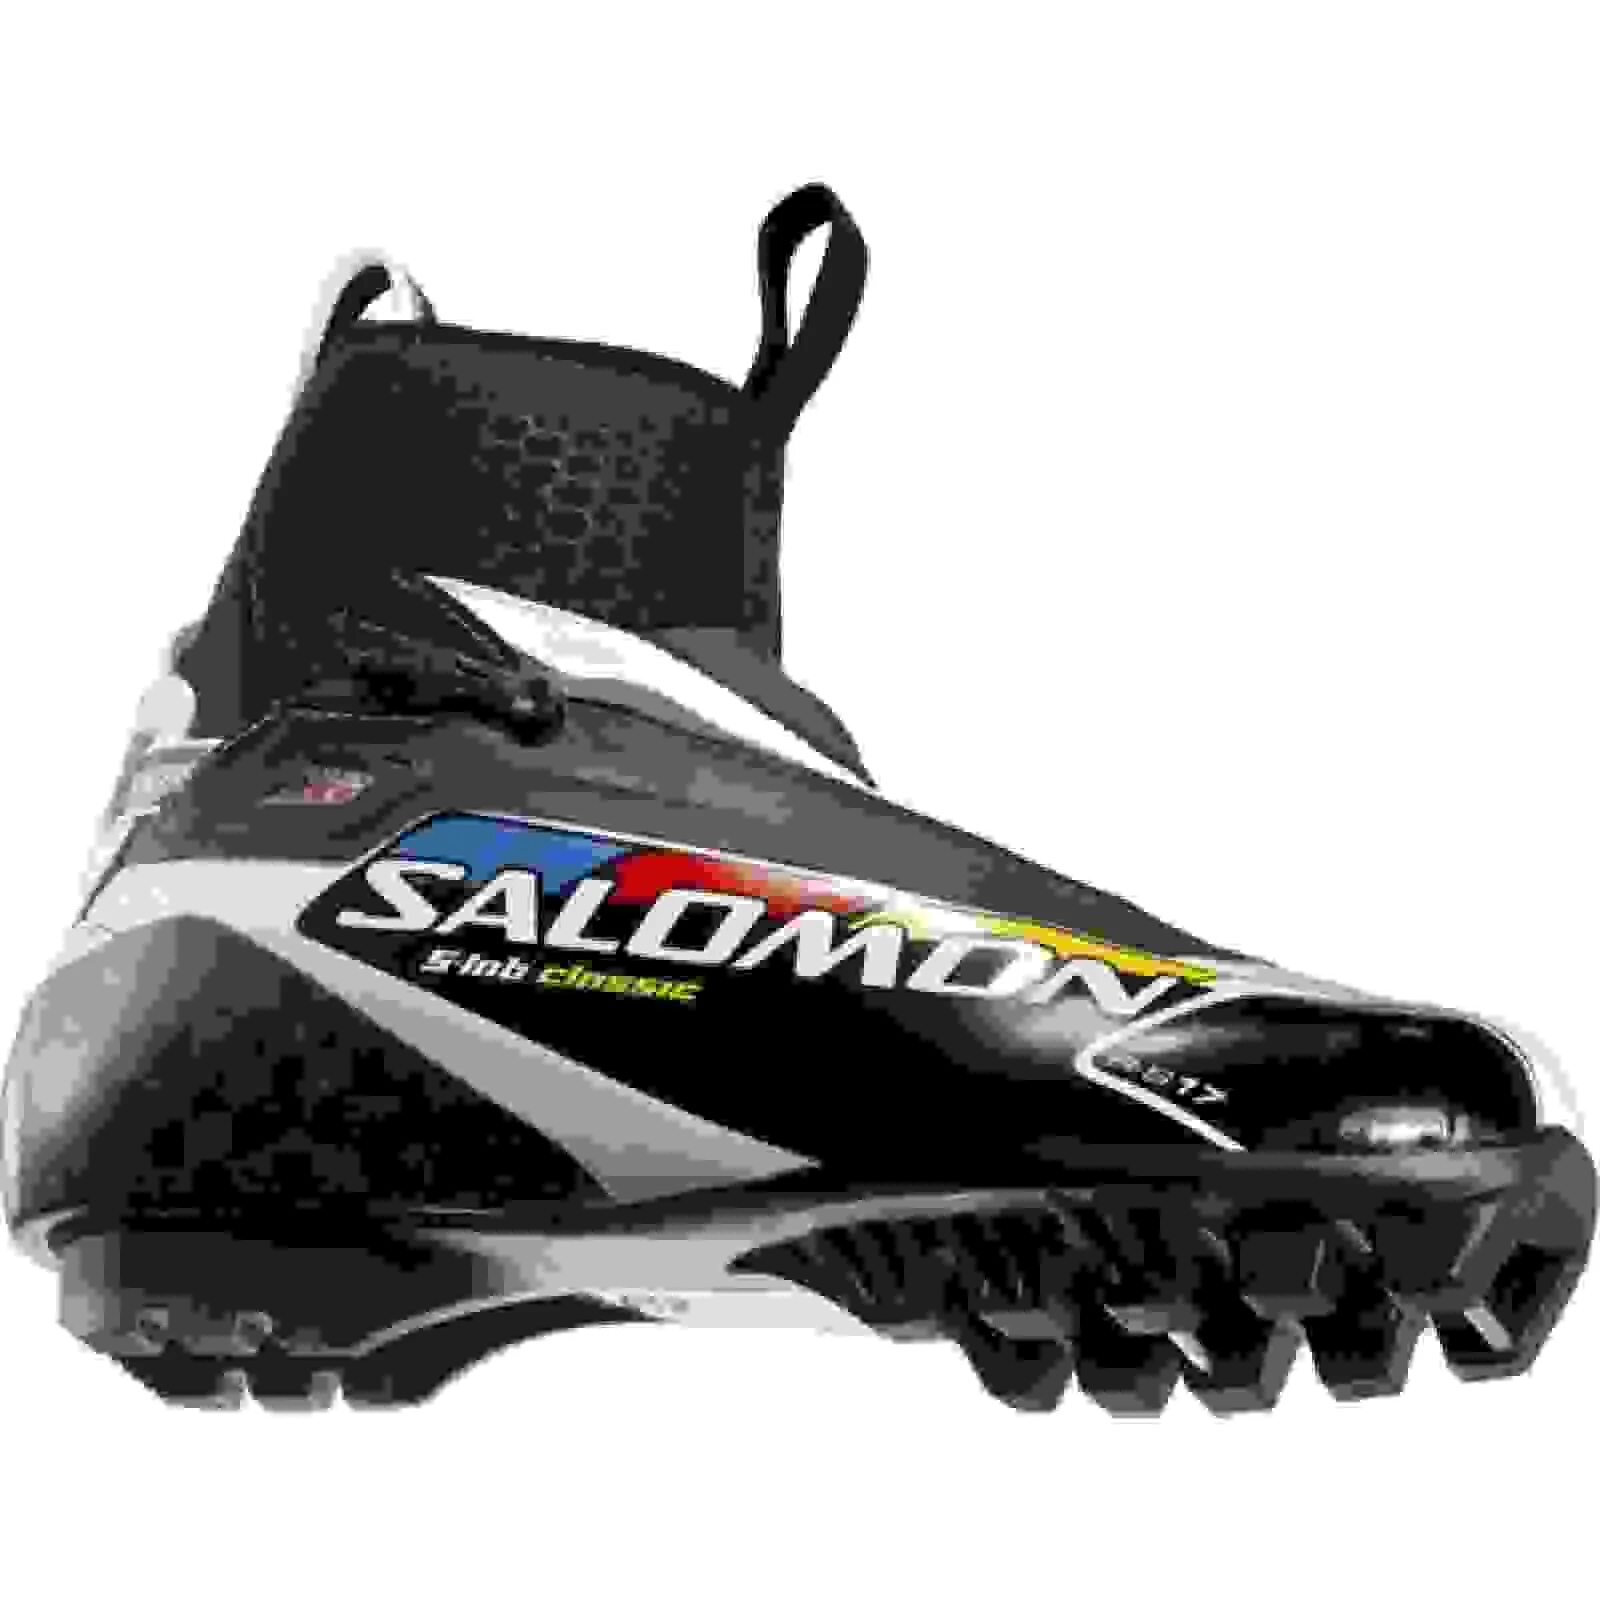 Лыжи подошв. Лыжные ботинки Salomon s-Lab. Лыжные ботинки Salomon s-Lab Carbon. Лыжные ботинки Salomon NNN. Ботинки Саломон лыжные коньковые SNS.